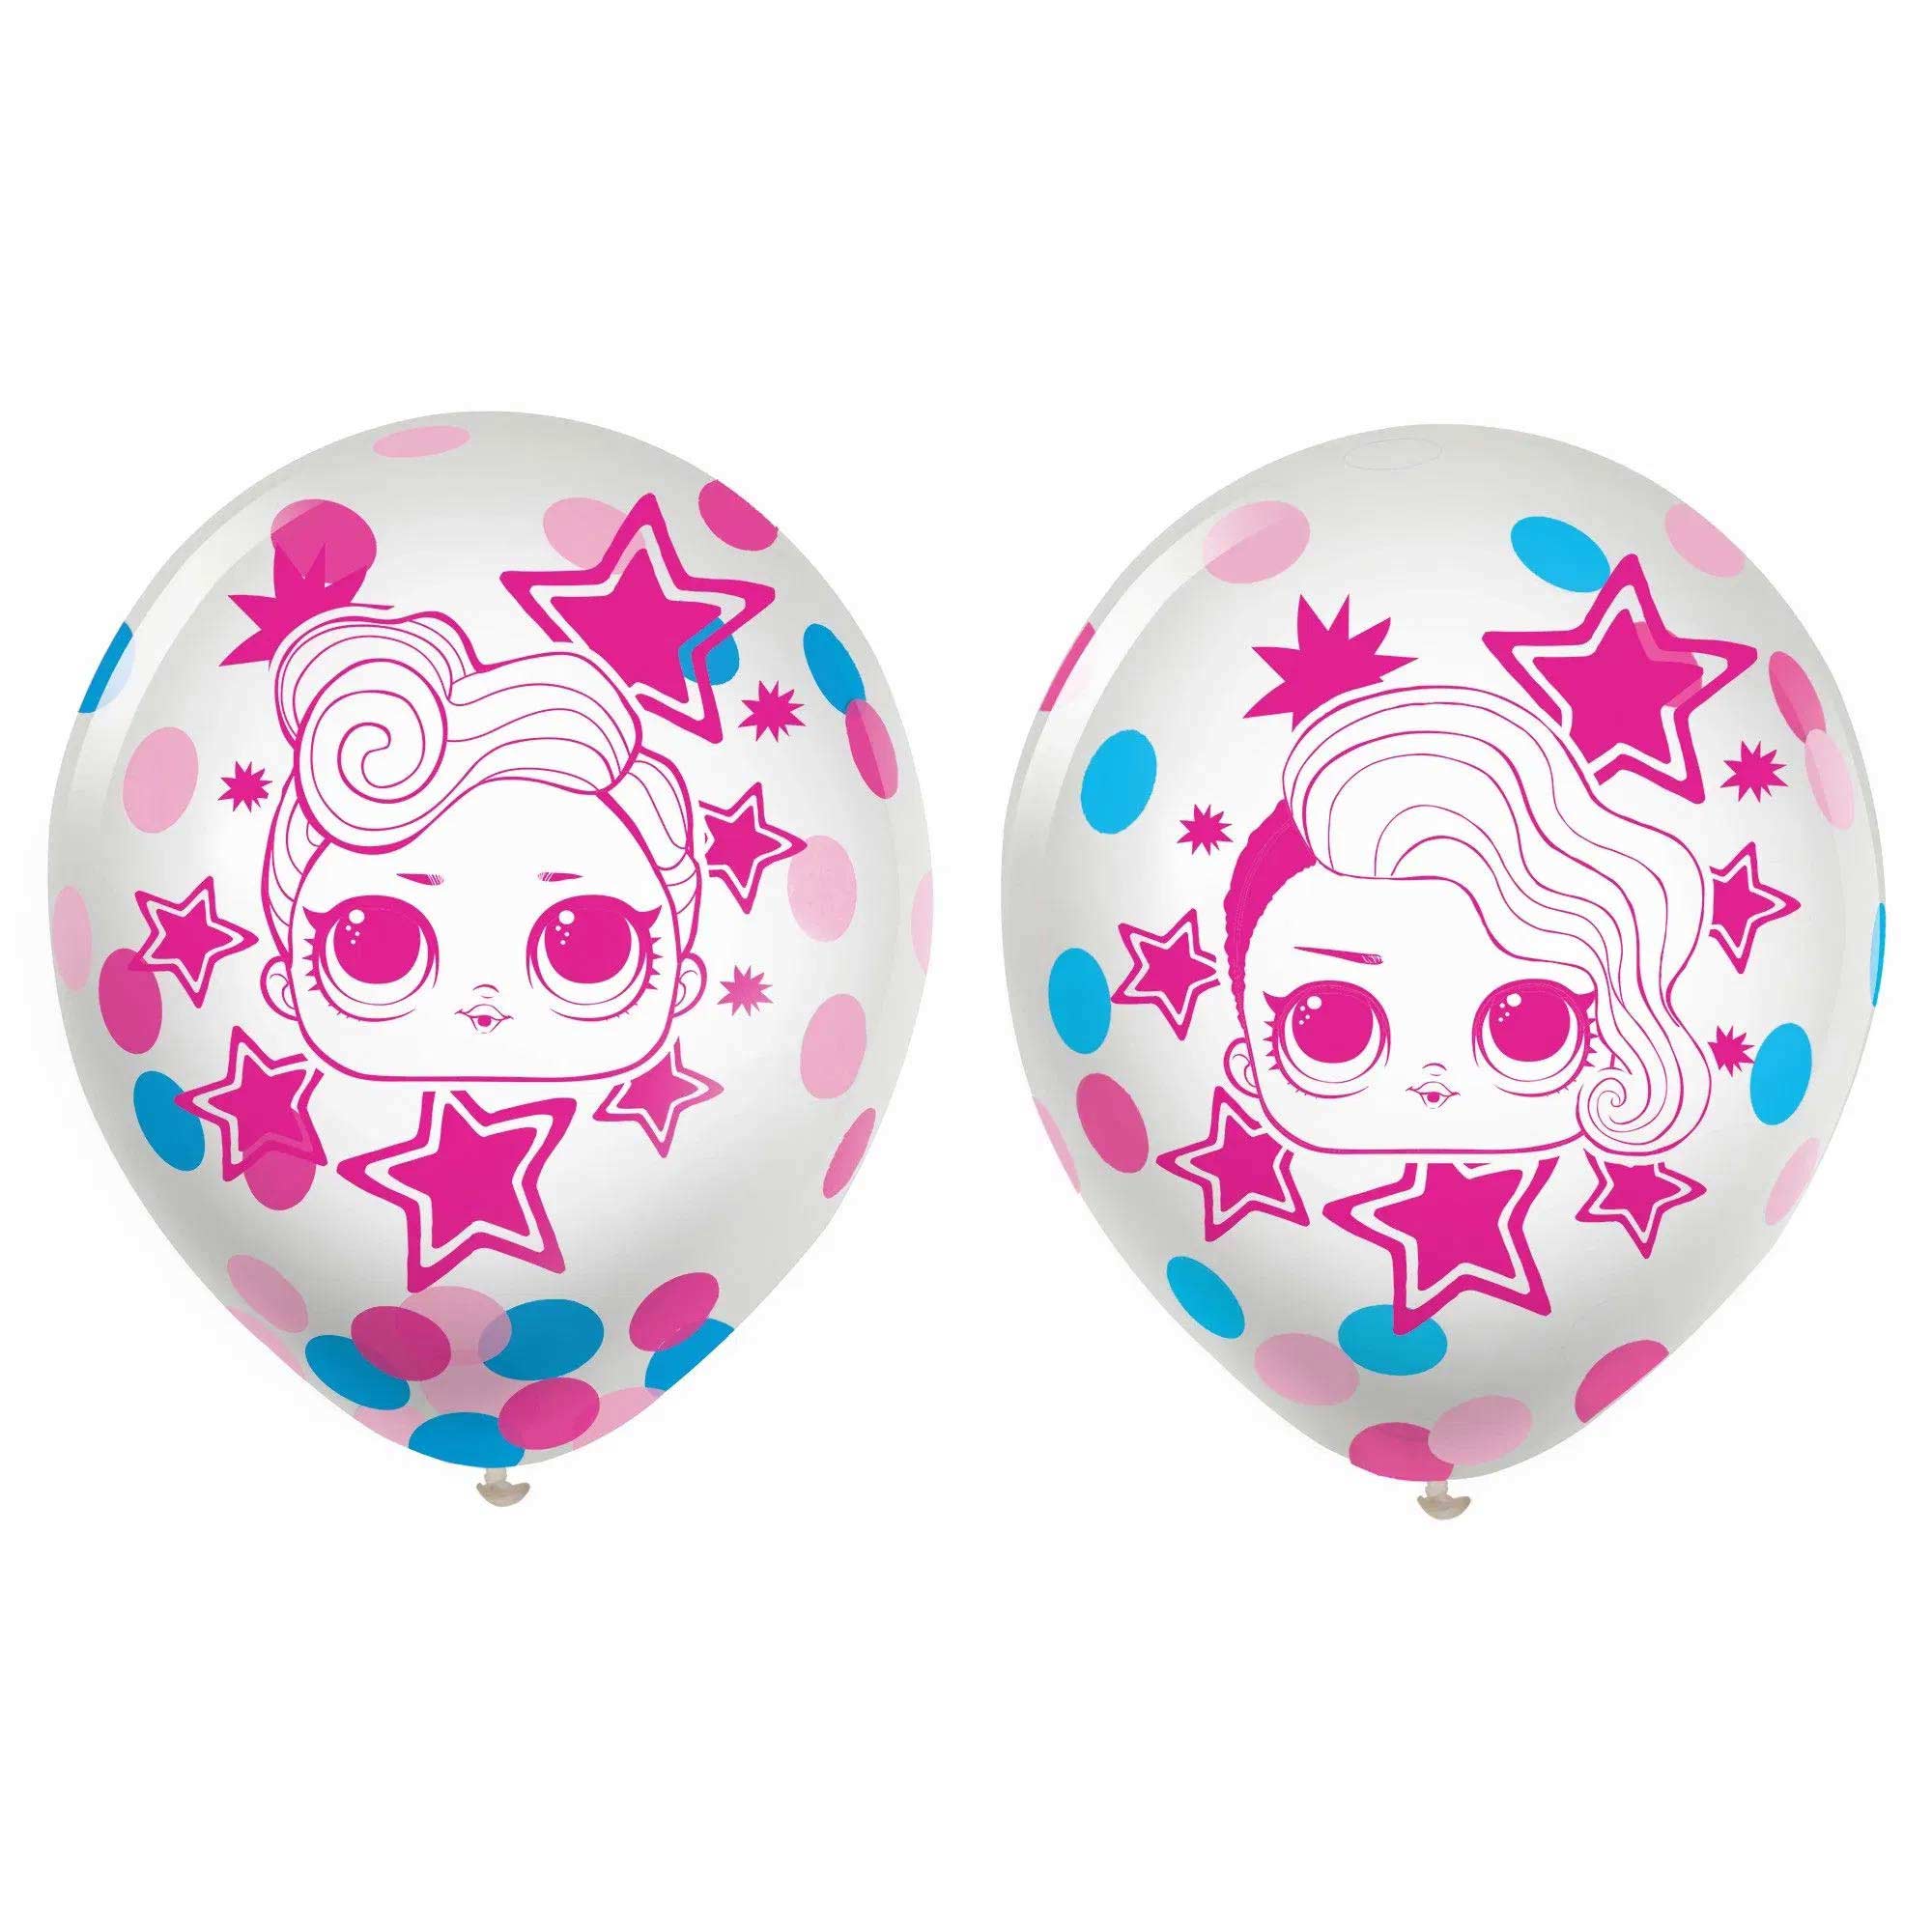 Lol Surprise Together 4Eva! Confetti Latex Balloon 12in, 6pcs